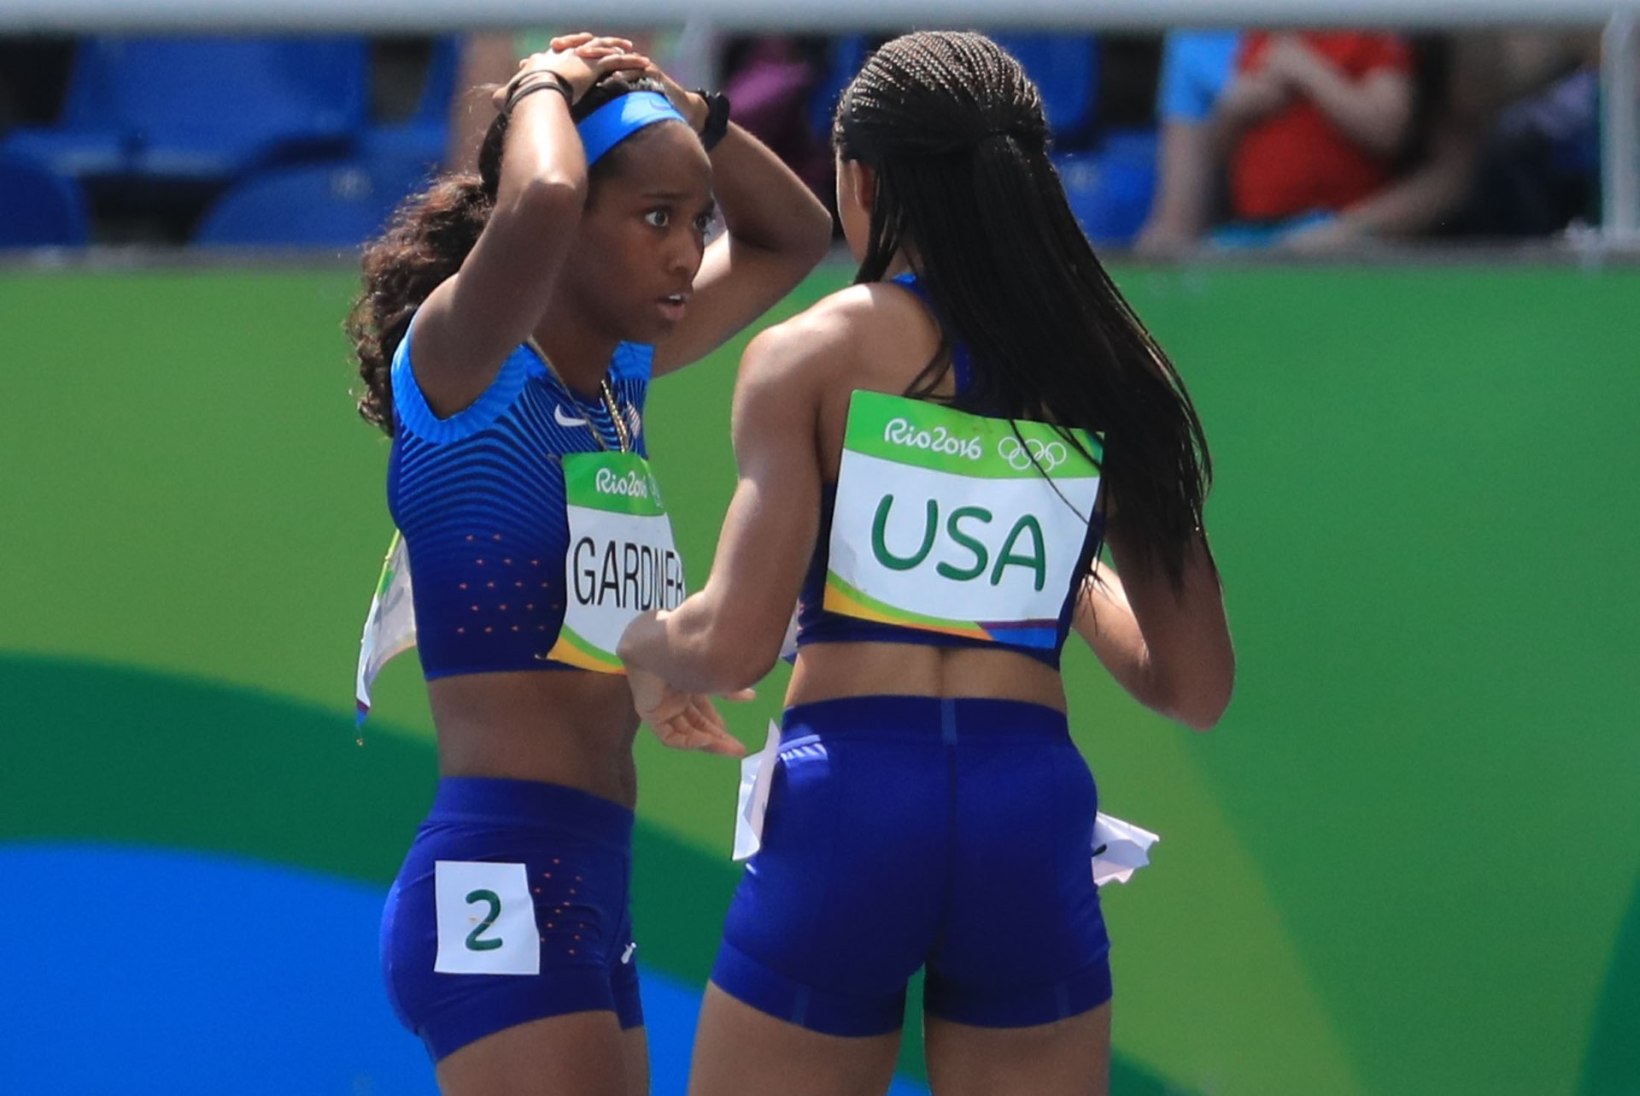 FOTOD | POLE PULKA, POLE PIDU! USA sprinterid ei saanud teatevahetusega hakkama 